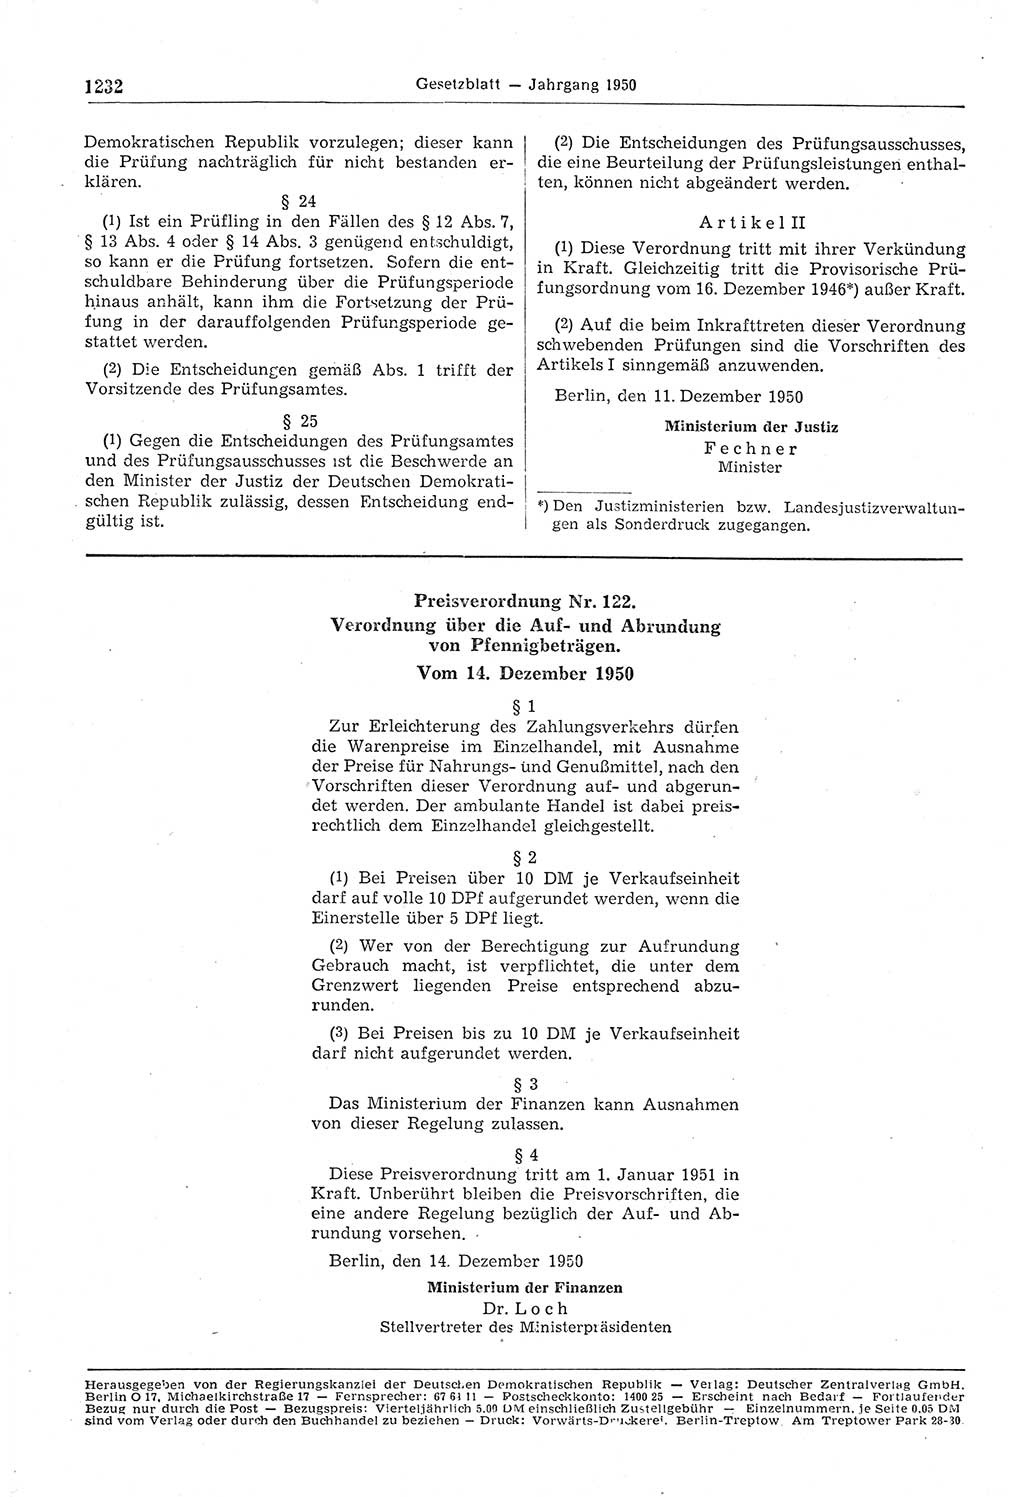 Gesetzblatt (GBl.) der Deutschen Demokratischen Republik (DDR) 1950, Seite 1232 (GBl. DDR 1950, S. 1232)